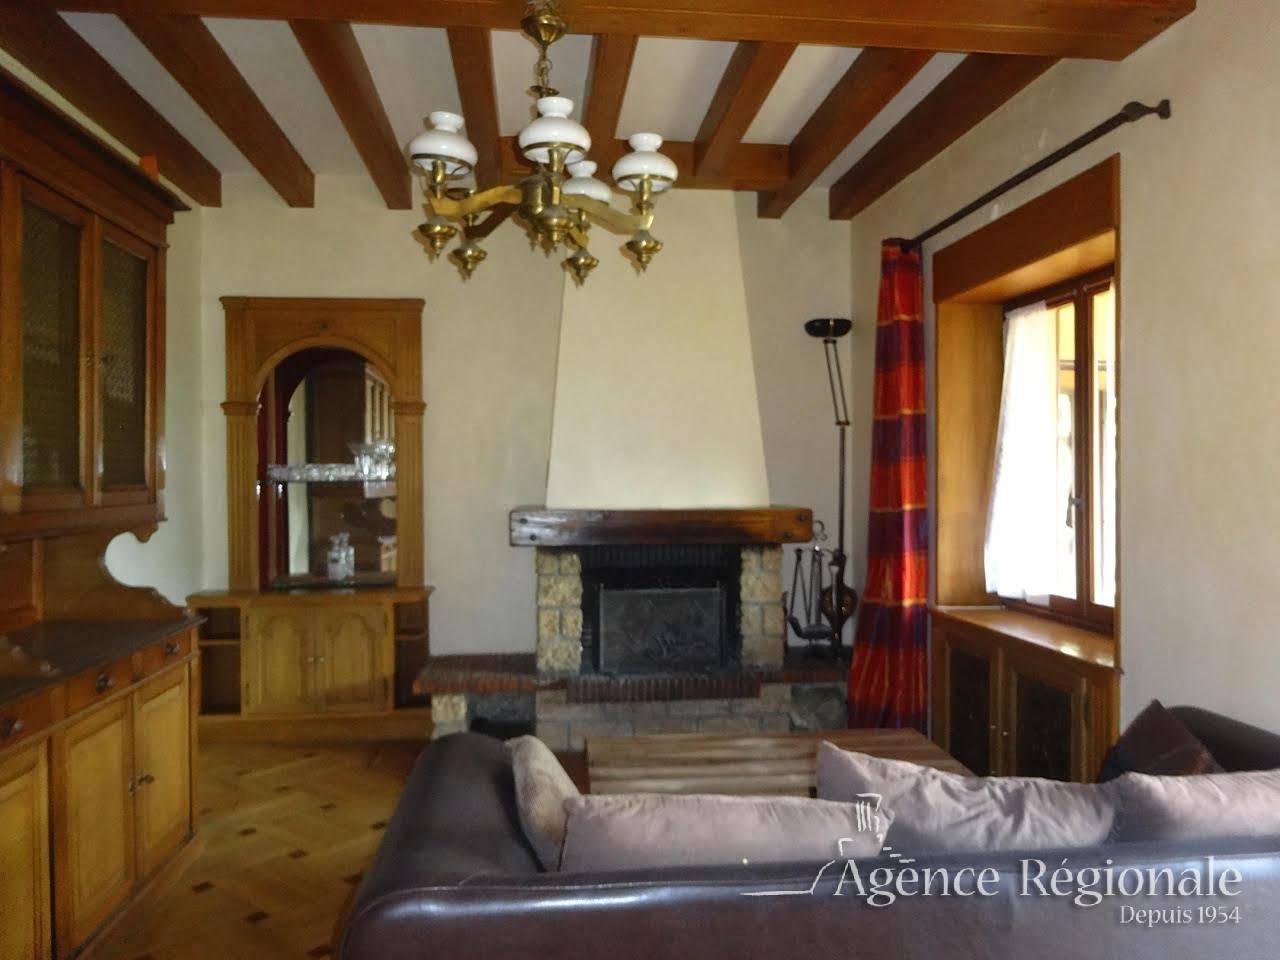 Living-room Fireplace Wooden floor Chandelier